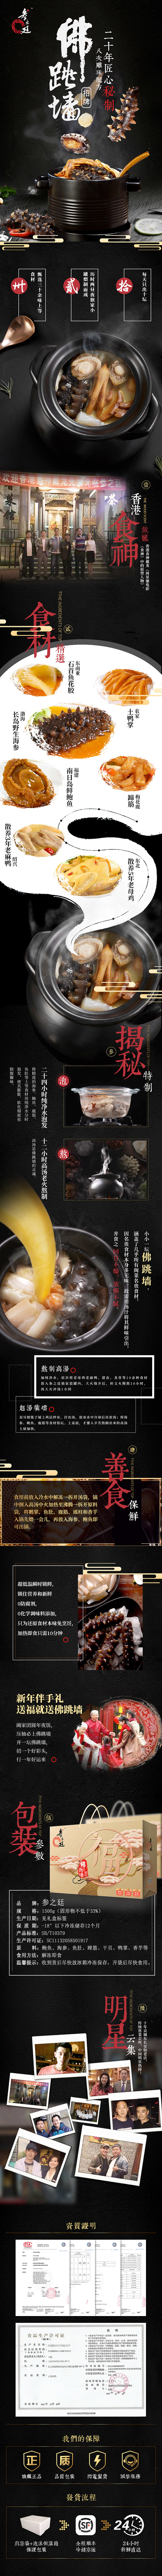 中国风食品类详情页